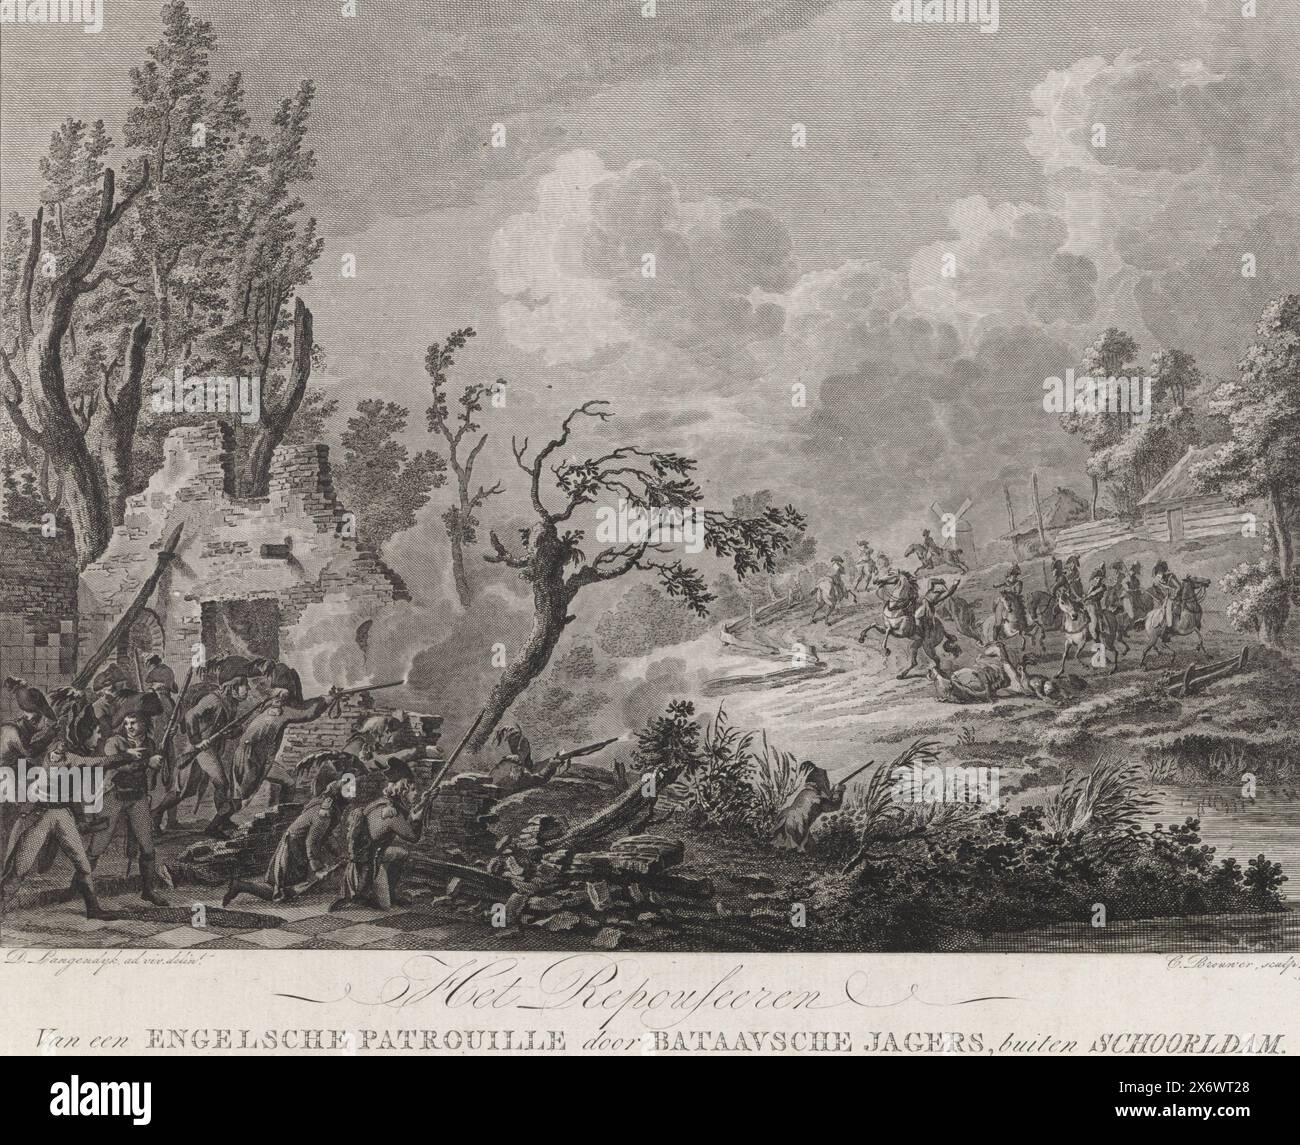 Combat à Schoorldam, 1799, le repousseering d'une patrouille anglaise par des chasseurs bataves, à l'extérieur de Schoorldam (titre sur l'objet), quatre plaques sur l'invasion anglo-russe (titre de la série), Une patrouille britannique est attaquée par des combattants bataves, près de Schoorldam, 1799. De derrière les ruines d'un bâtiment, les soldats tirent sur les cavaliers britanniques., imprimeur, imprimeur : Cornelis Brouwer, (mentionné sur l'objet), après dessin par : Dirk Langendijk, (mentionné sur l'objet), éditeur : J. Groenewoud, imprimeur : pays-Bas, après dessin par : Schoorldam, 1800 - 1802, papier, gravure, gravure, hauteur, 236 mm Banque D'Images